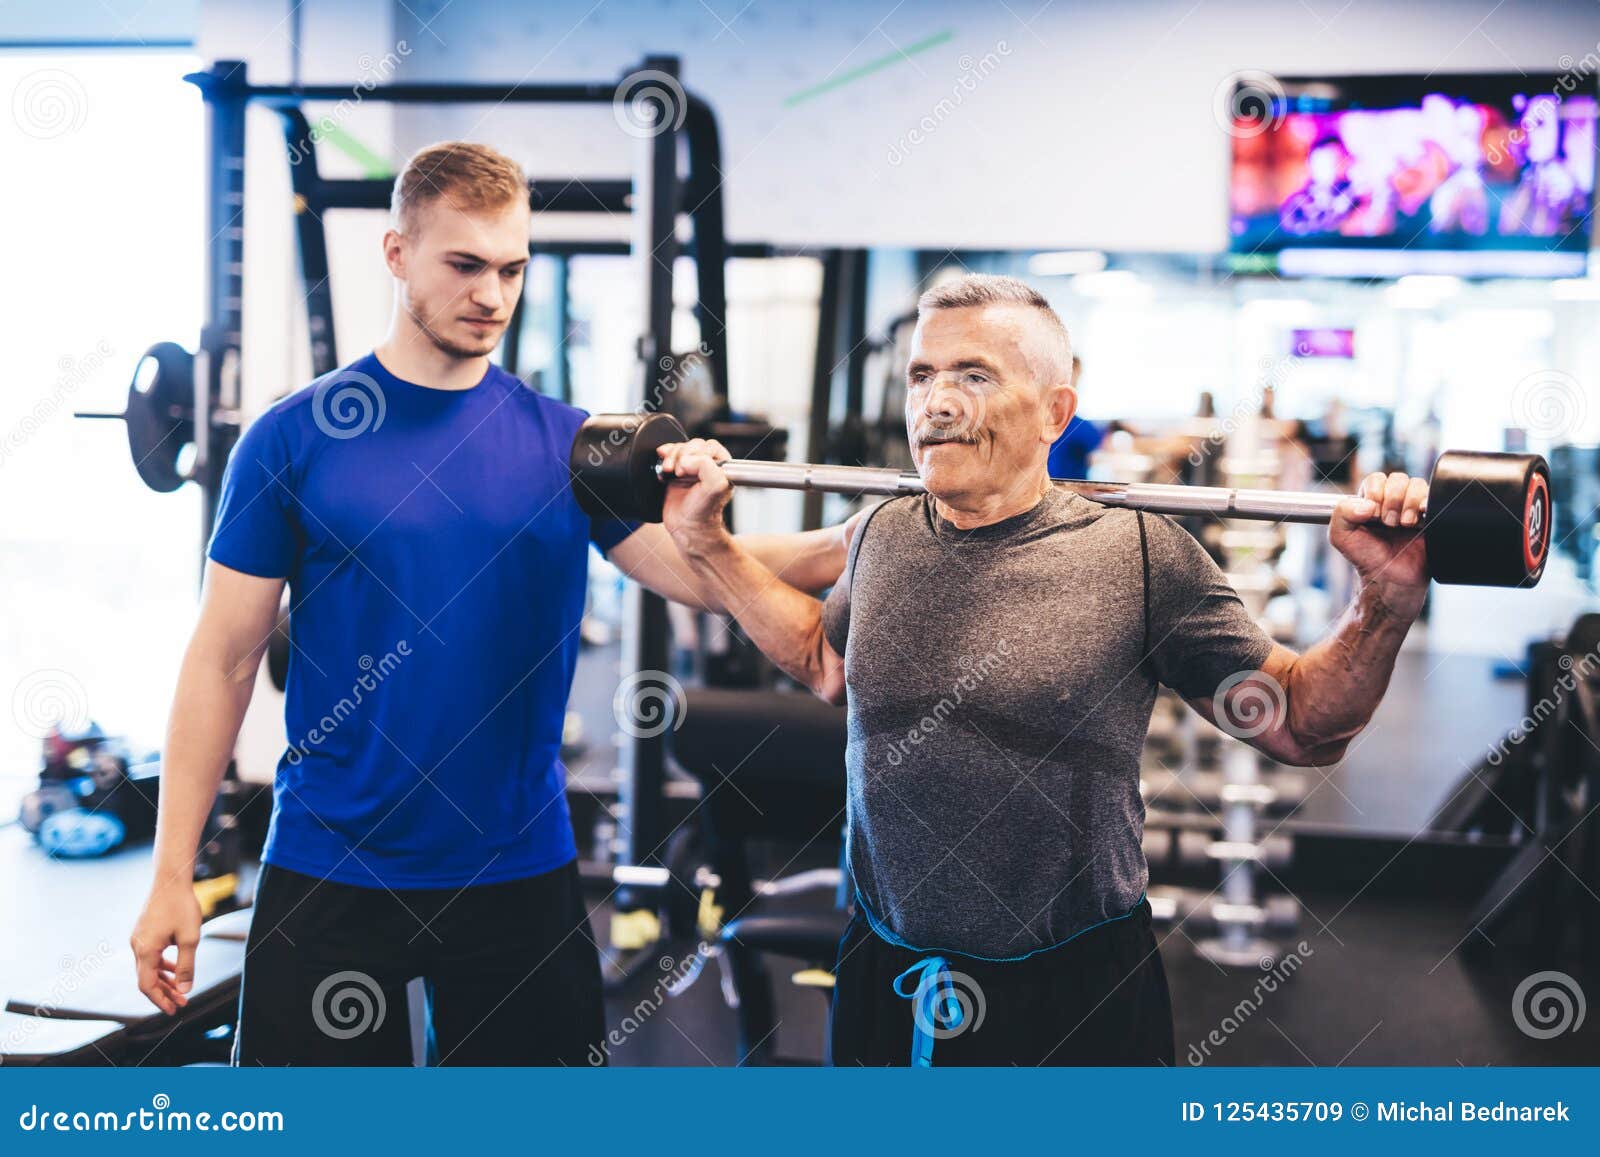 indelukke legemliggøre tyfon Older Man Assisting Senior Man at the Gym. Stock Image - Image of dumbbell,  elderly: 125435709